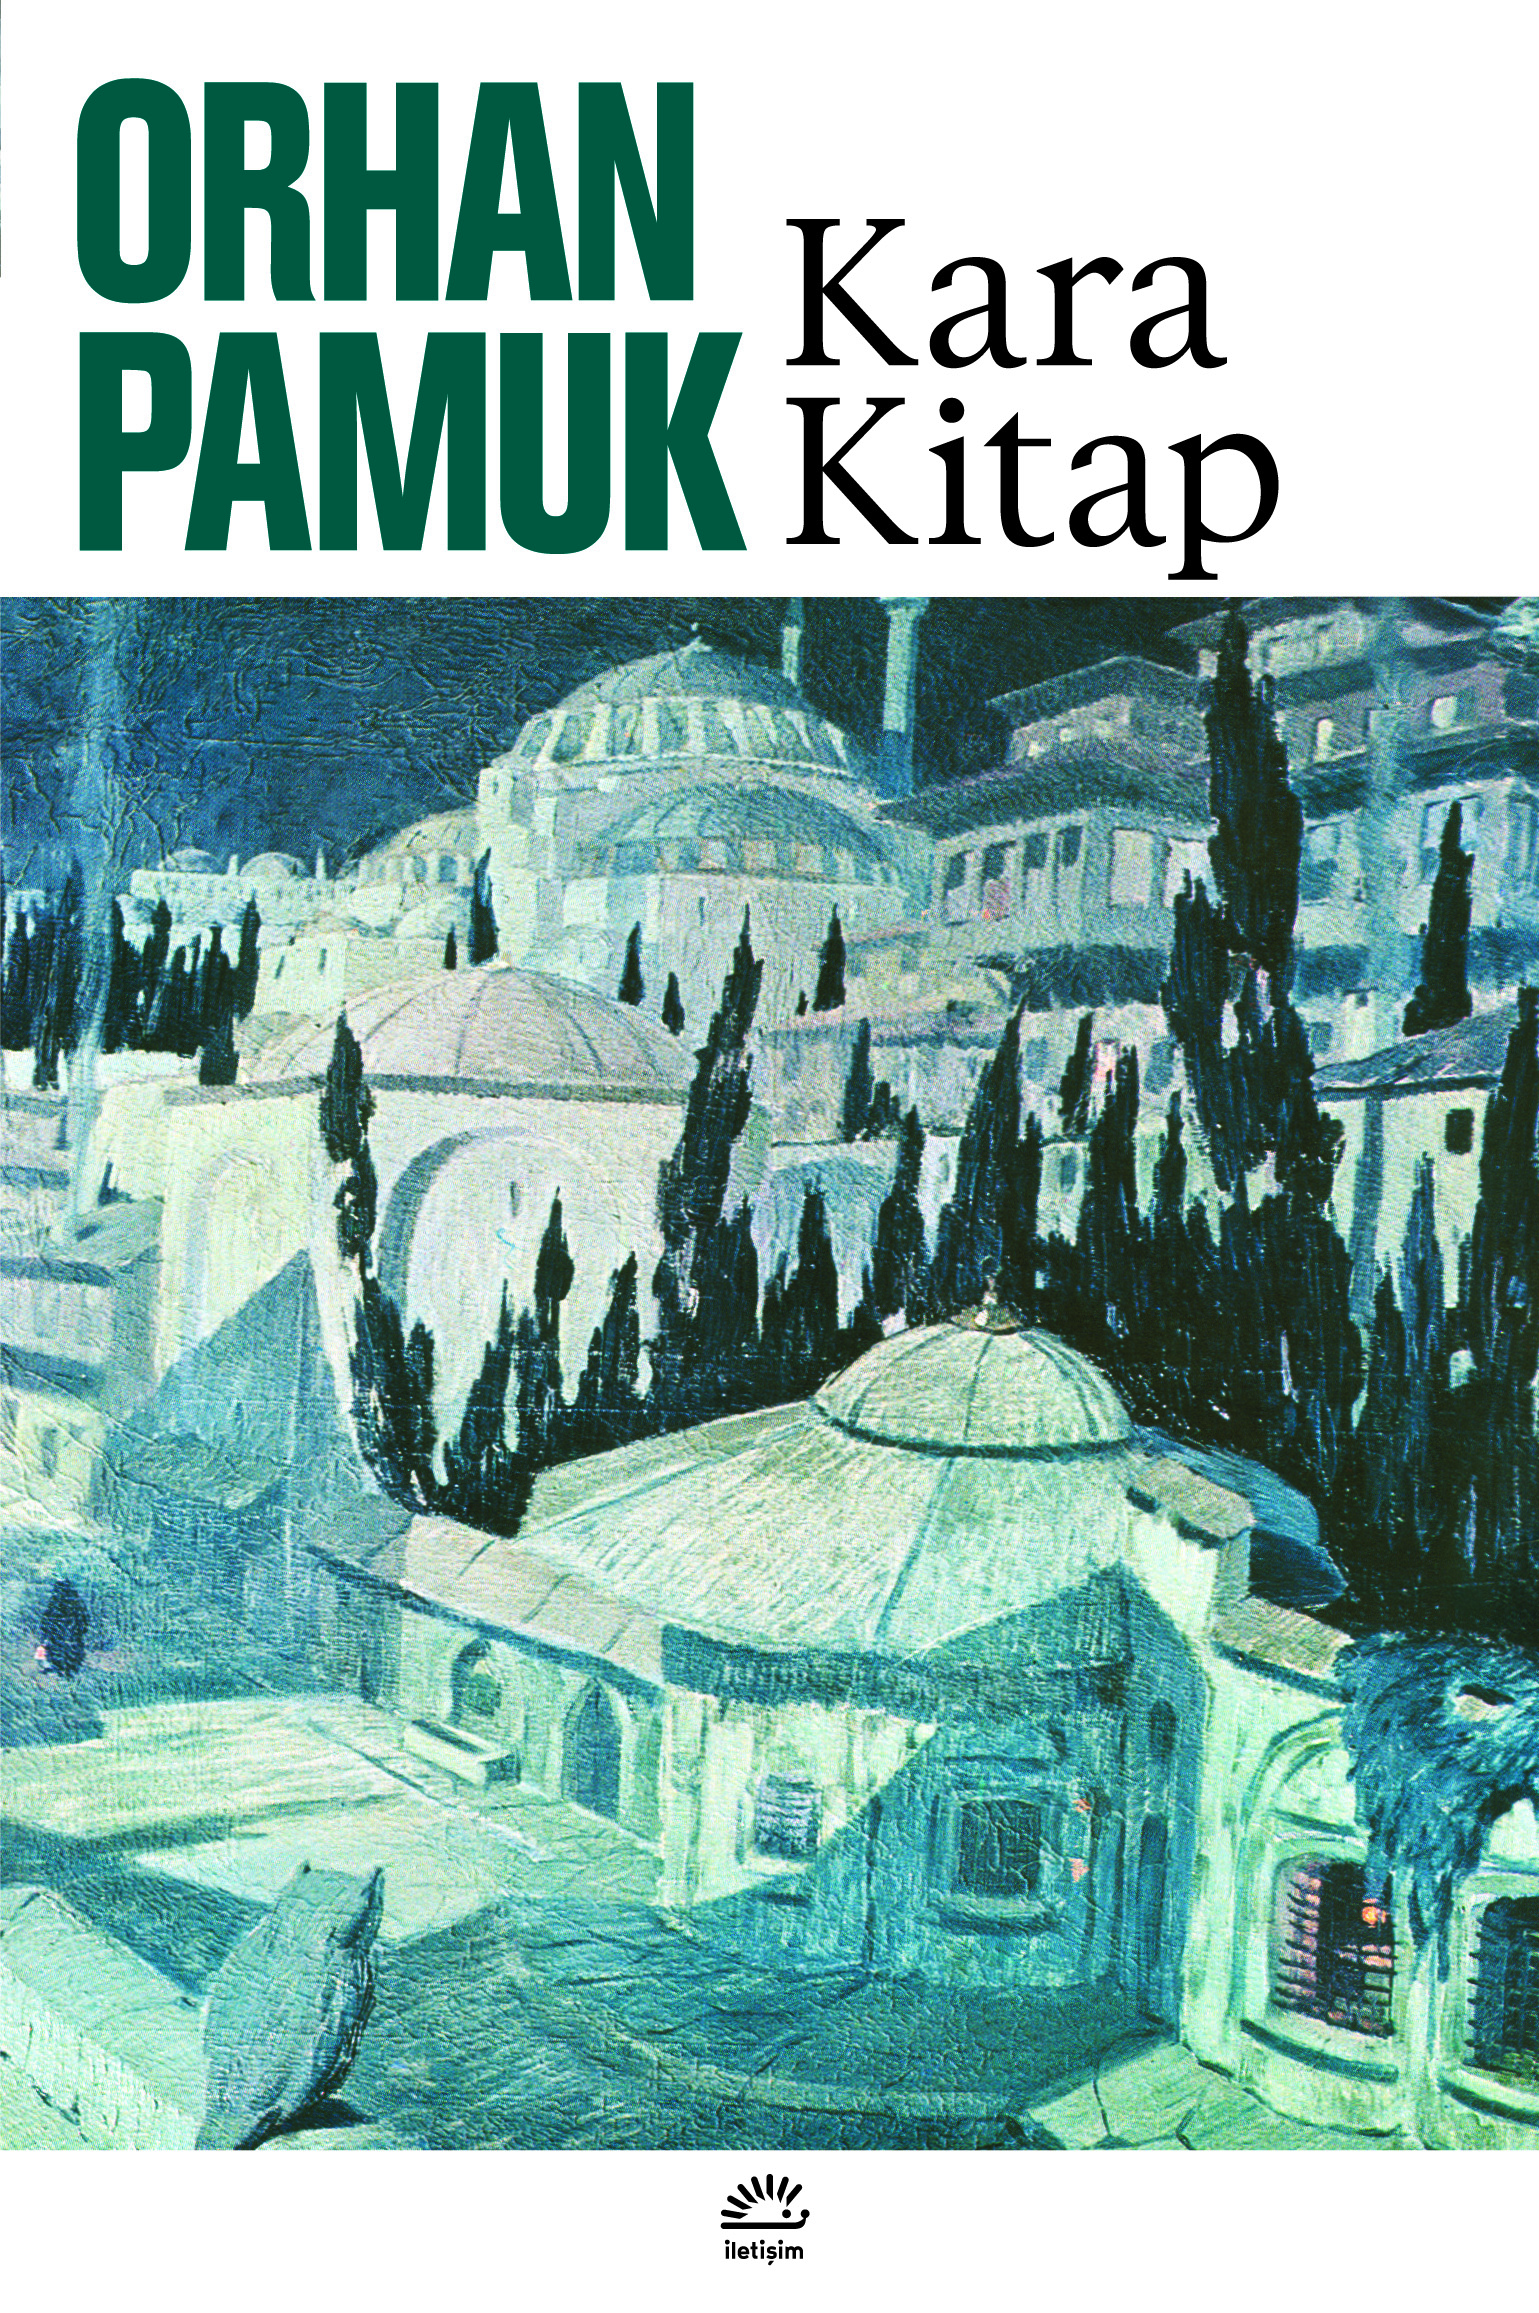 De konijnen van Orhan Pamuk – Fictie en kritiek in Turkije